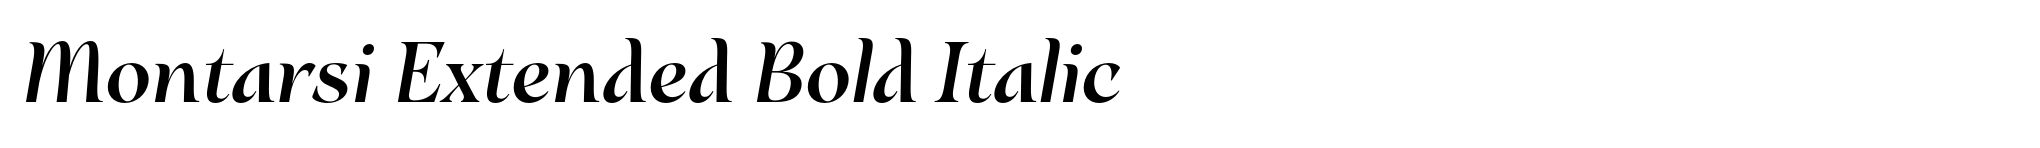 Montarsi Extended Bold Italic image